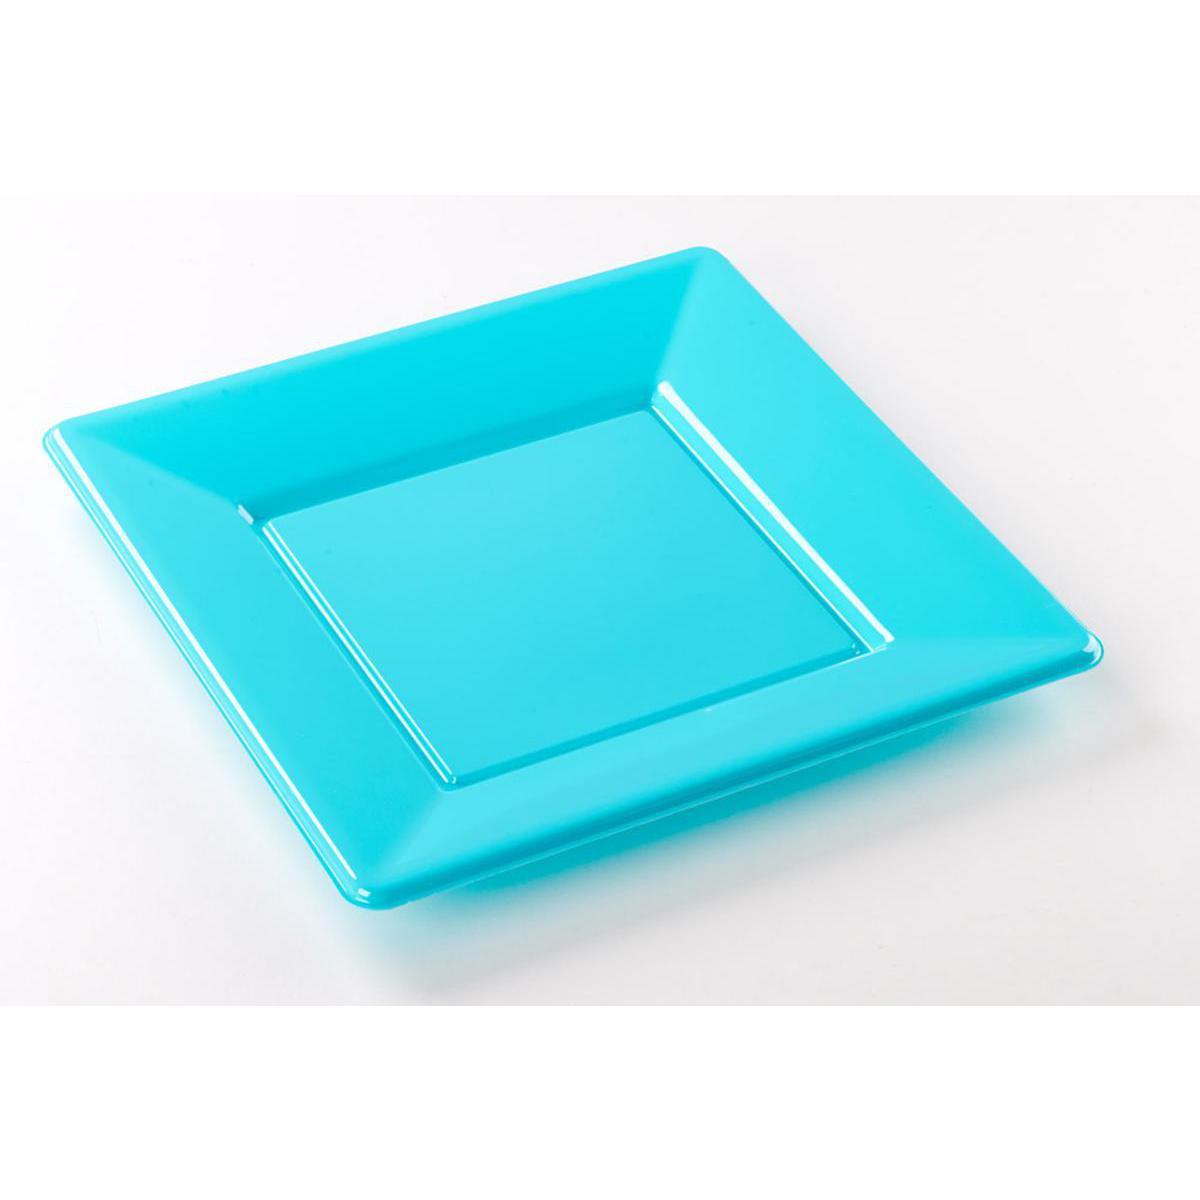 Lot de 8 assiettes - plastique -23 cm x 23 cm - Bleu turquoise